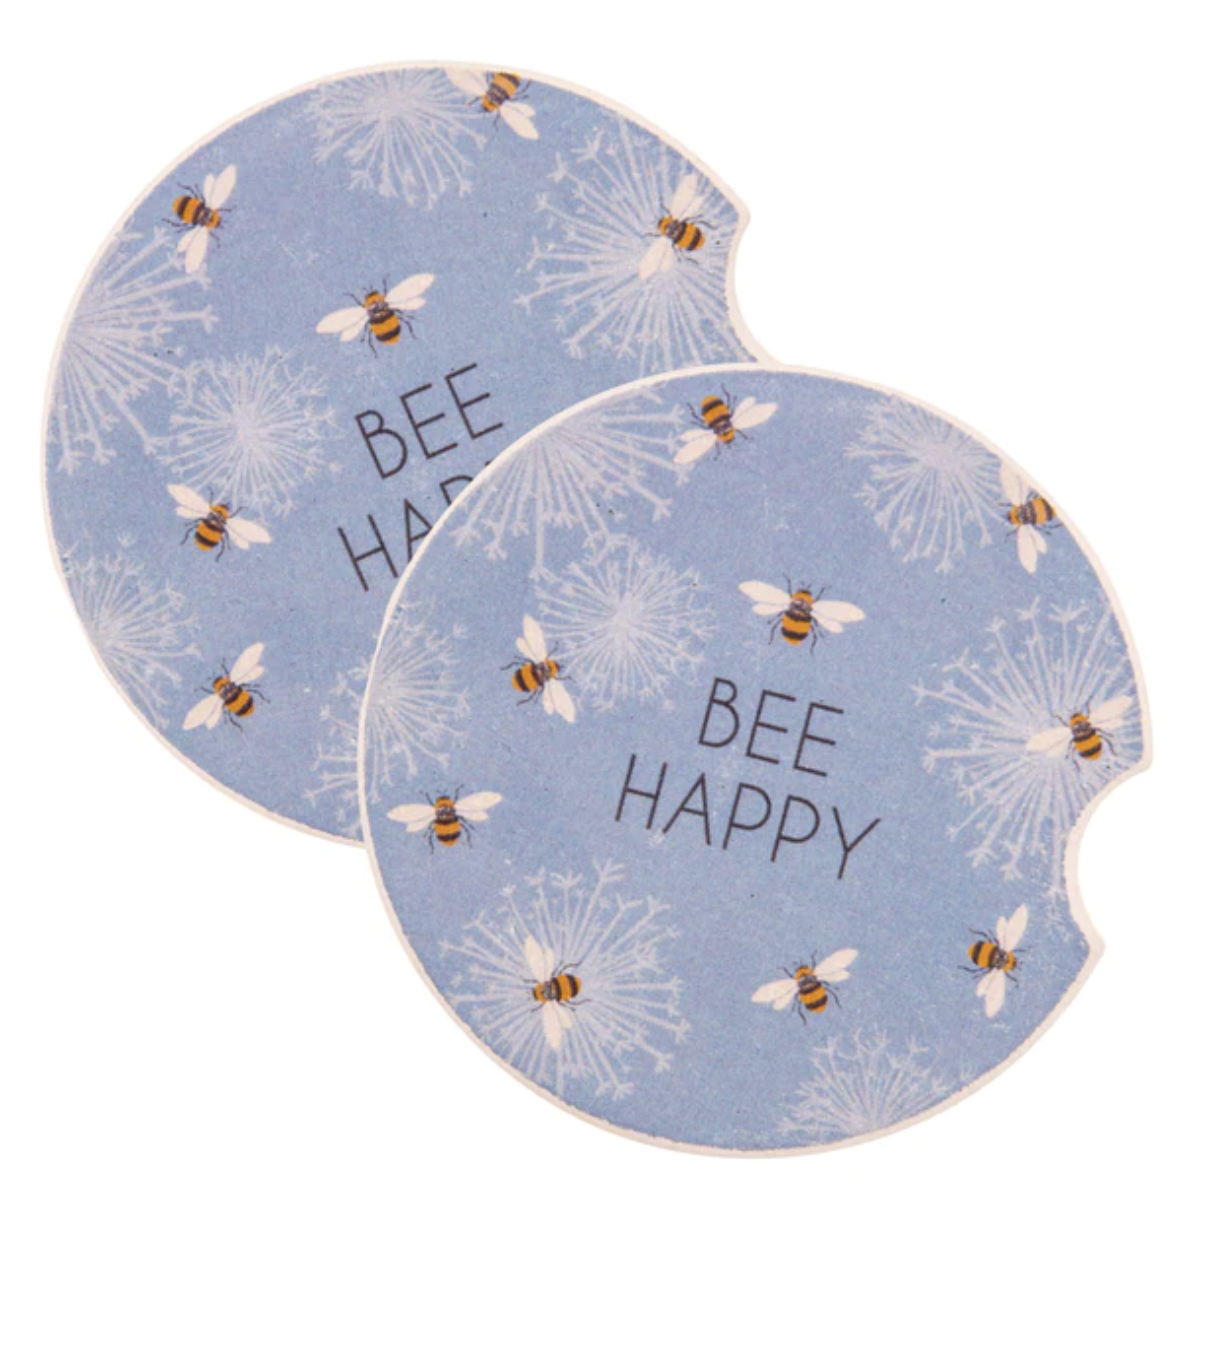 "Bee Happy" Car Coasters